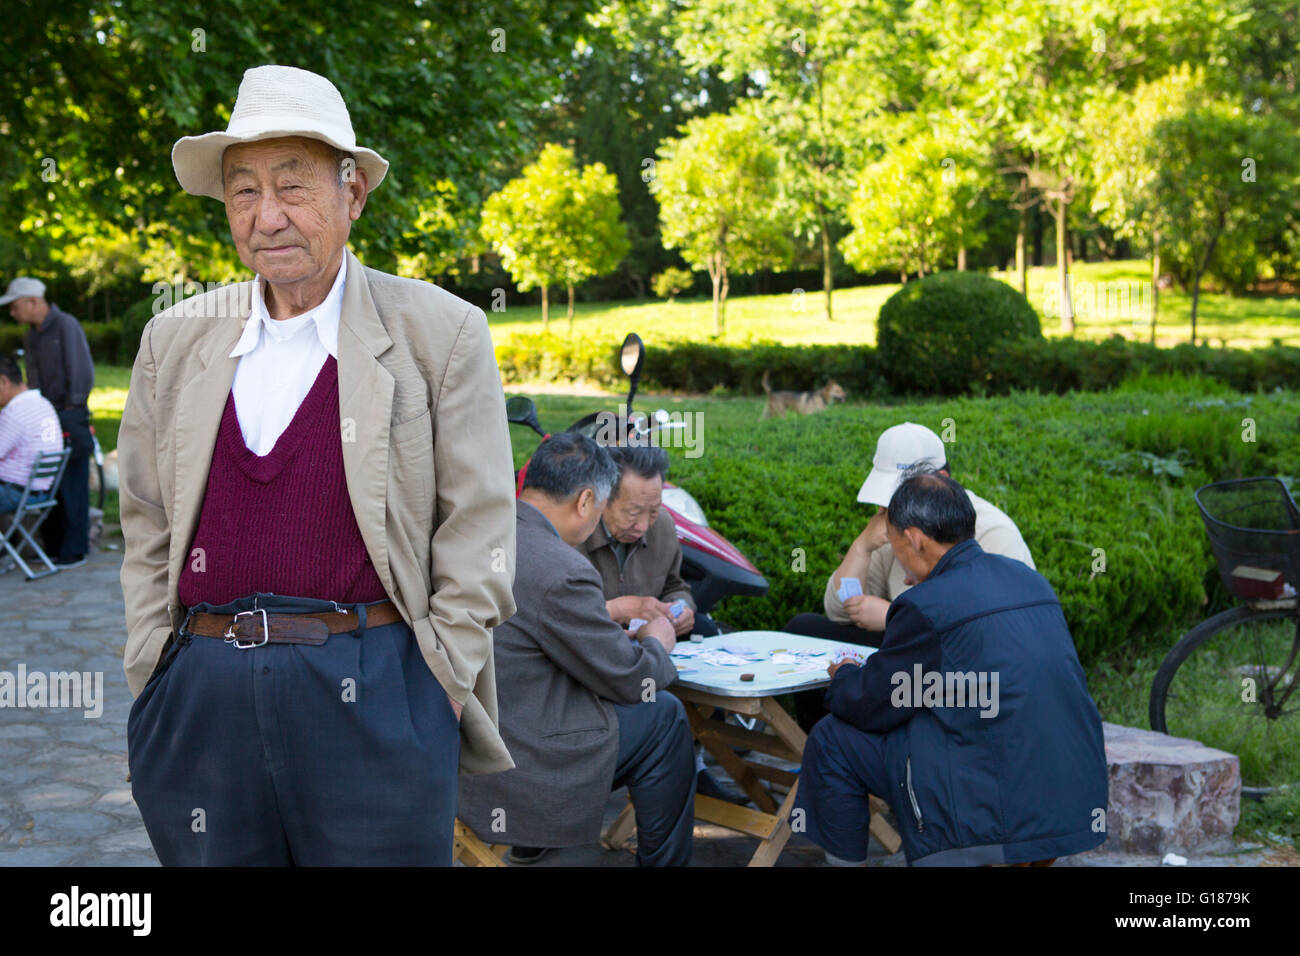 Portrait d'un homme chinois avec un chapeau blanc dans un parc avec des gens cartes à jouer dans l'arrière-plan sur une journée ensoleillée Banque D'Images